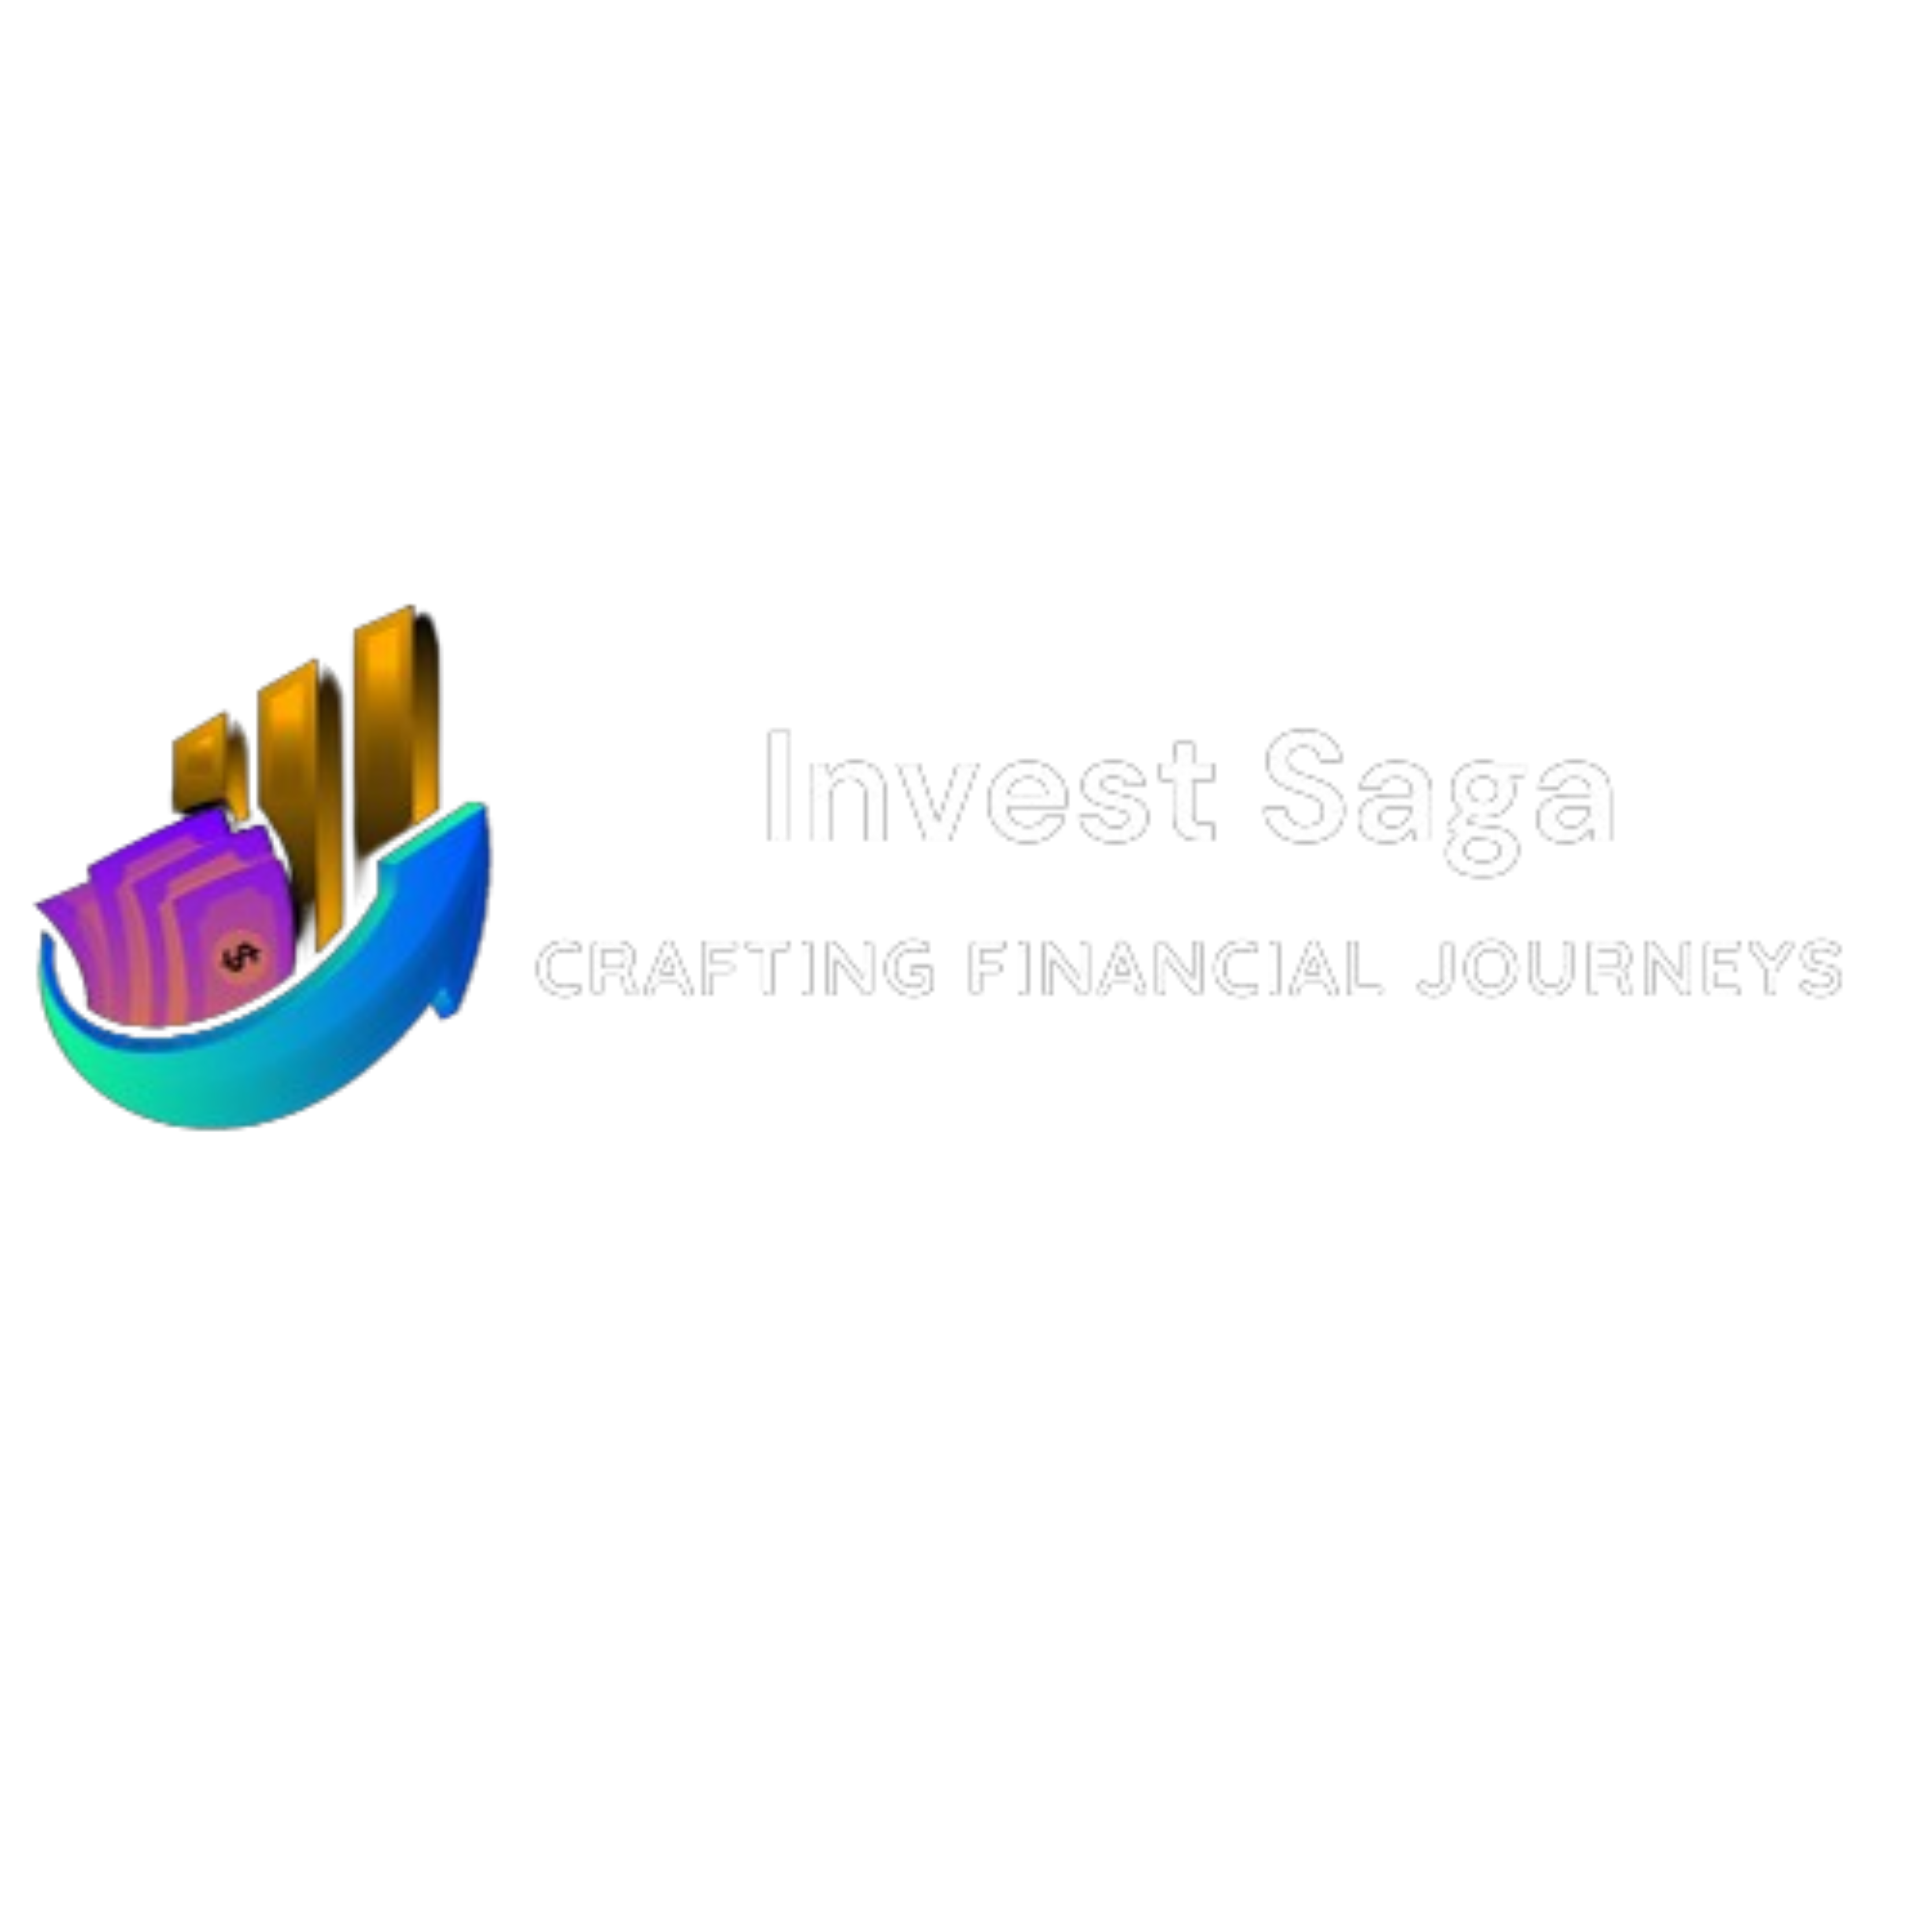 Invest Saga